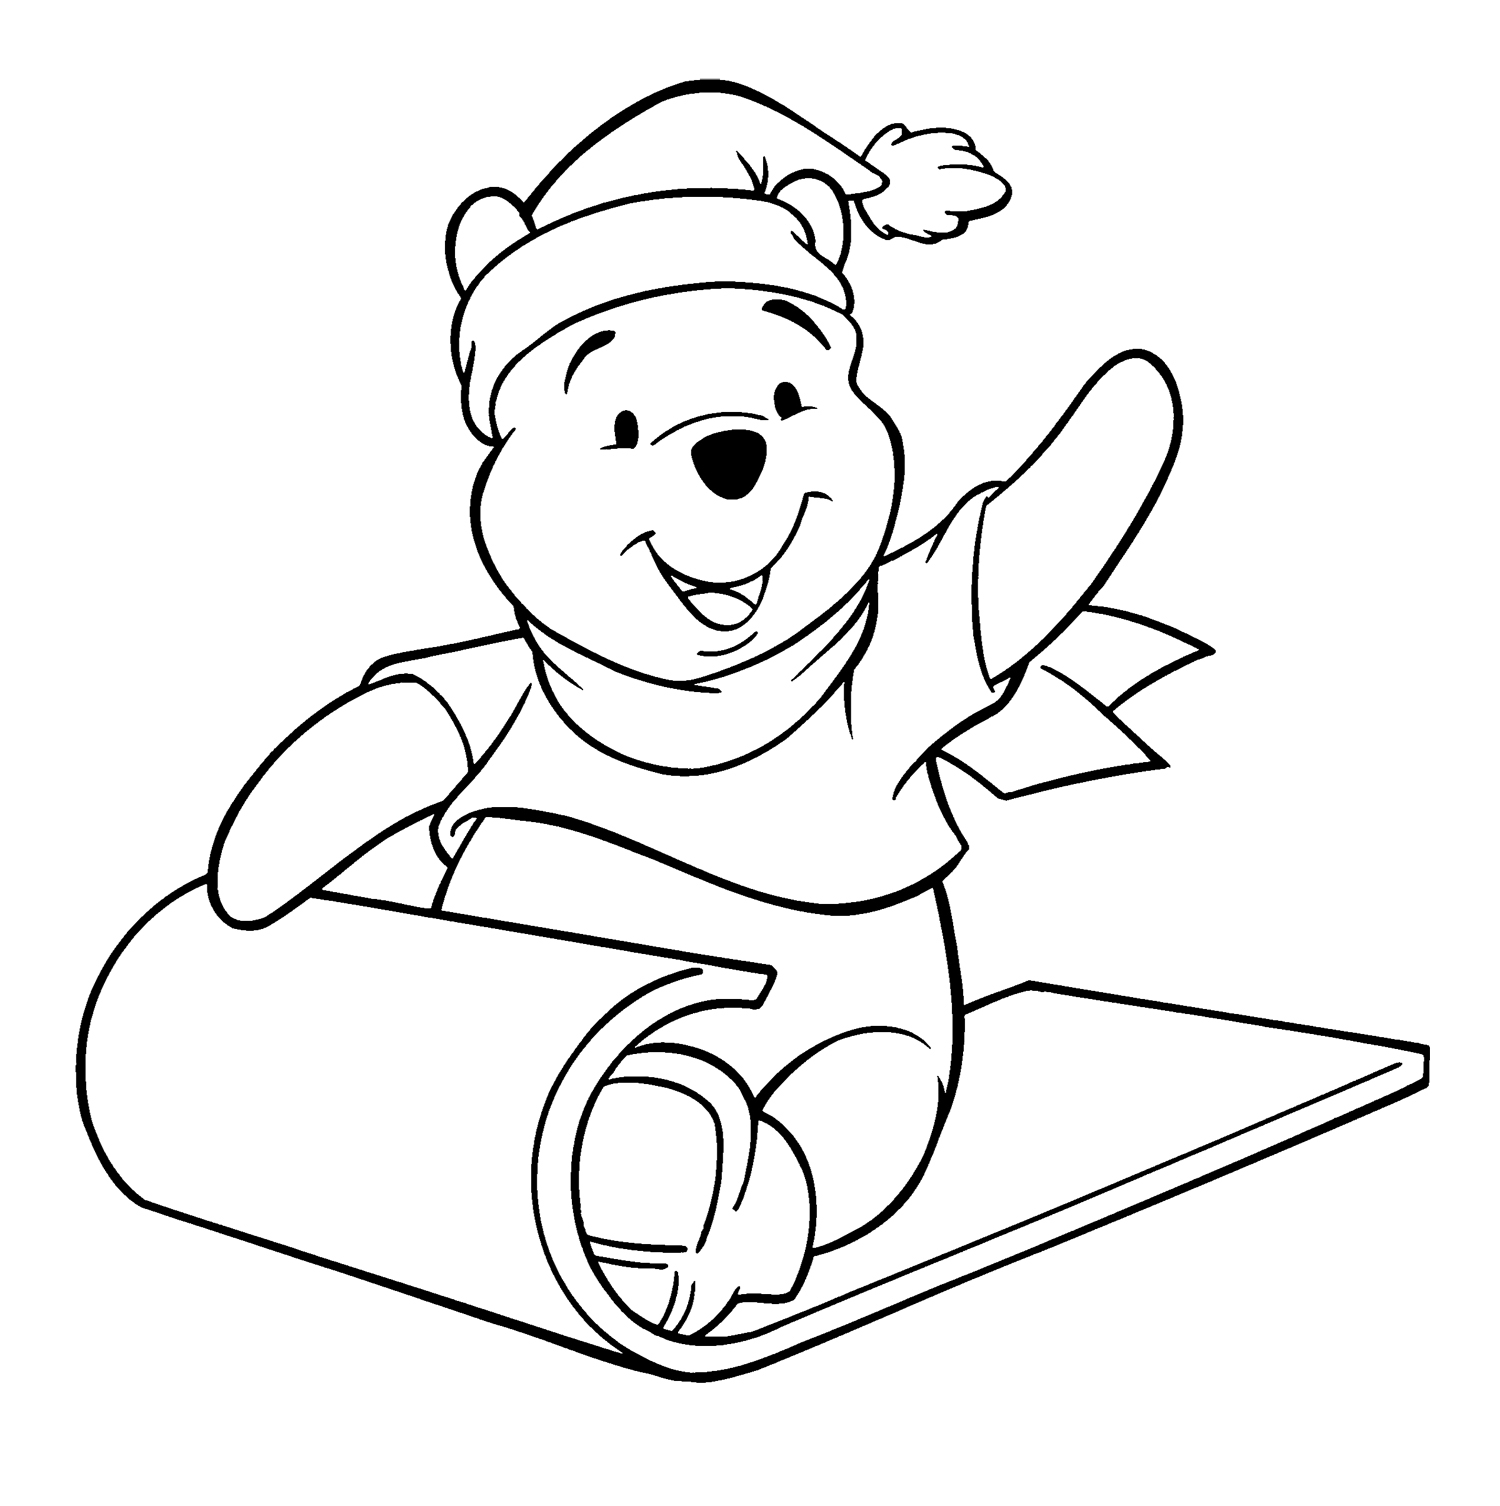 Tranh tô màu gấu Pooh vui vẻ, hạnh phúc